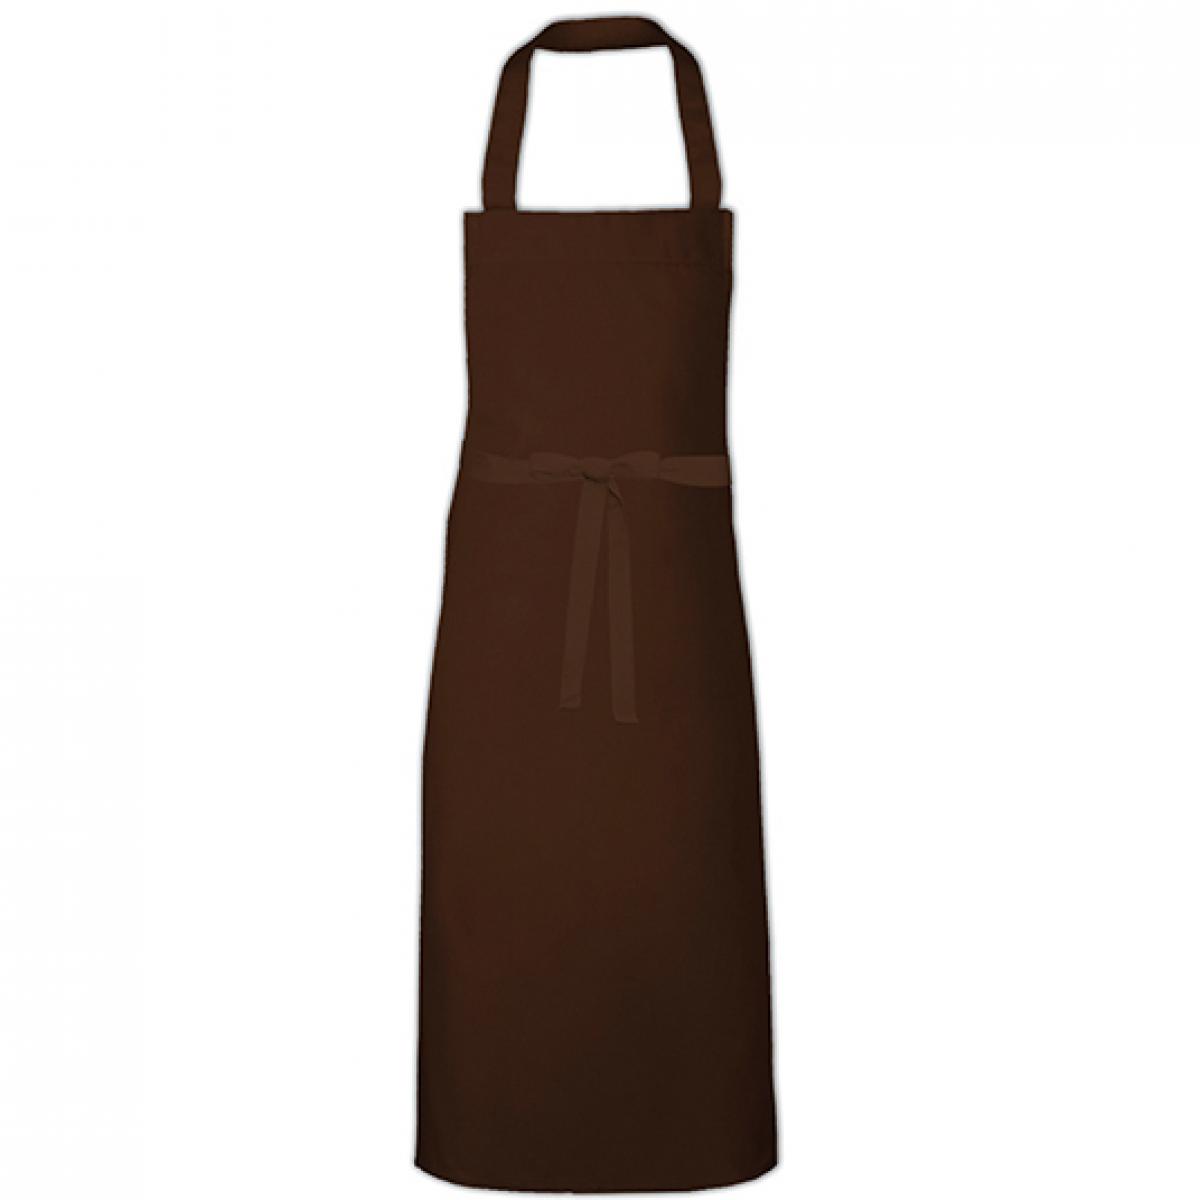 Hersteller: Link Kitchen Wear Herstellernummer: BBQ11073 Artikelbezeichnung: Barbecue Apron XL - 73 x 110 cm - Waschbar bis 60 °C Farbe: Brown